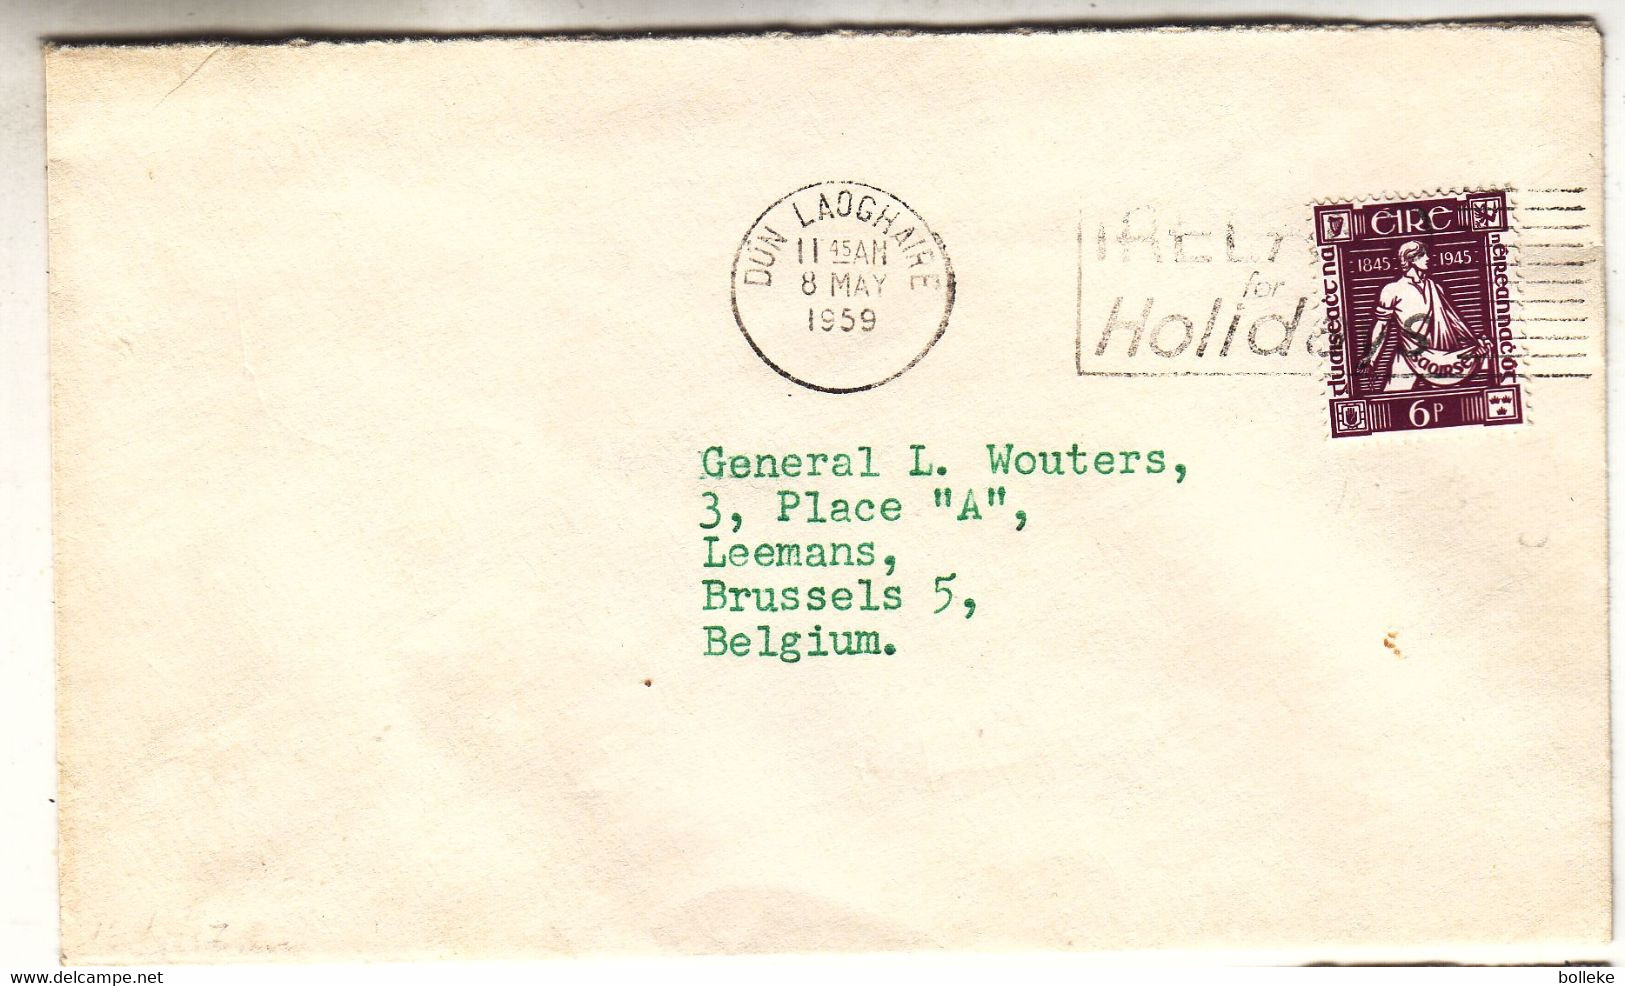 Irlande - Lettre De 1959 - Oblit Dün Laoghaire - Exp Vers Bruxelles - Semeur - - Covers & Documents